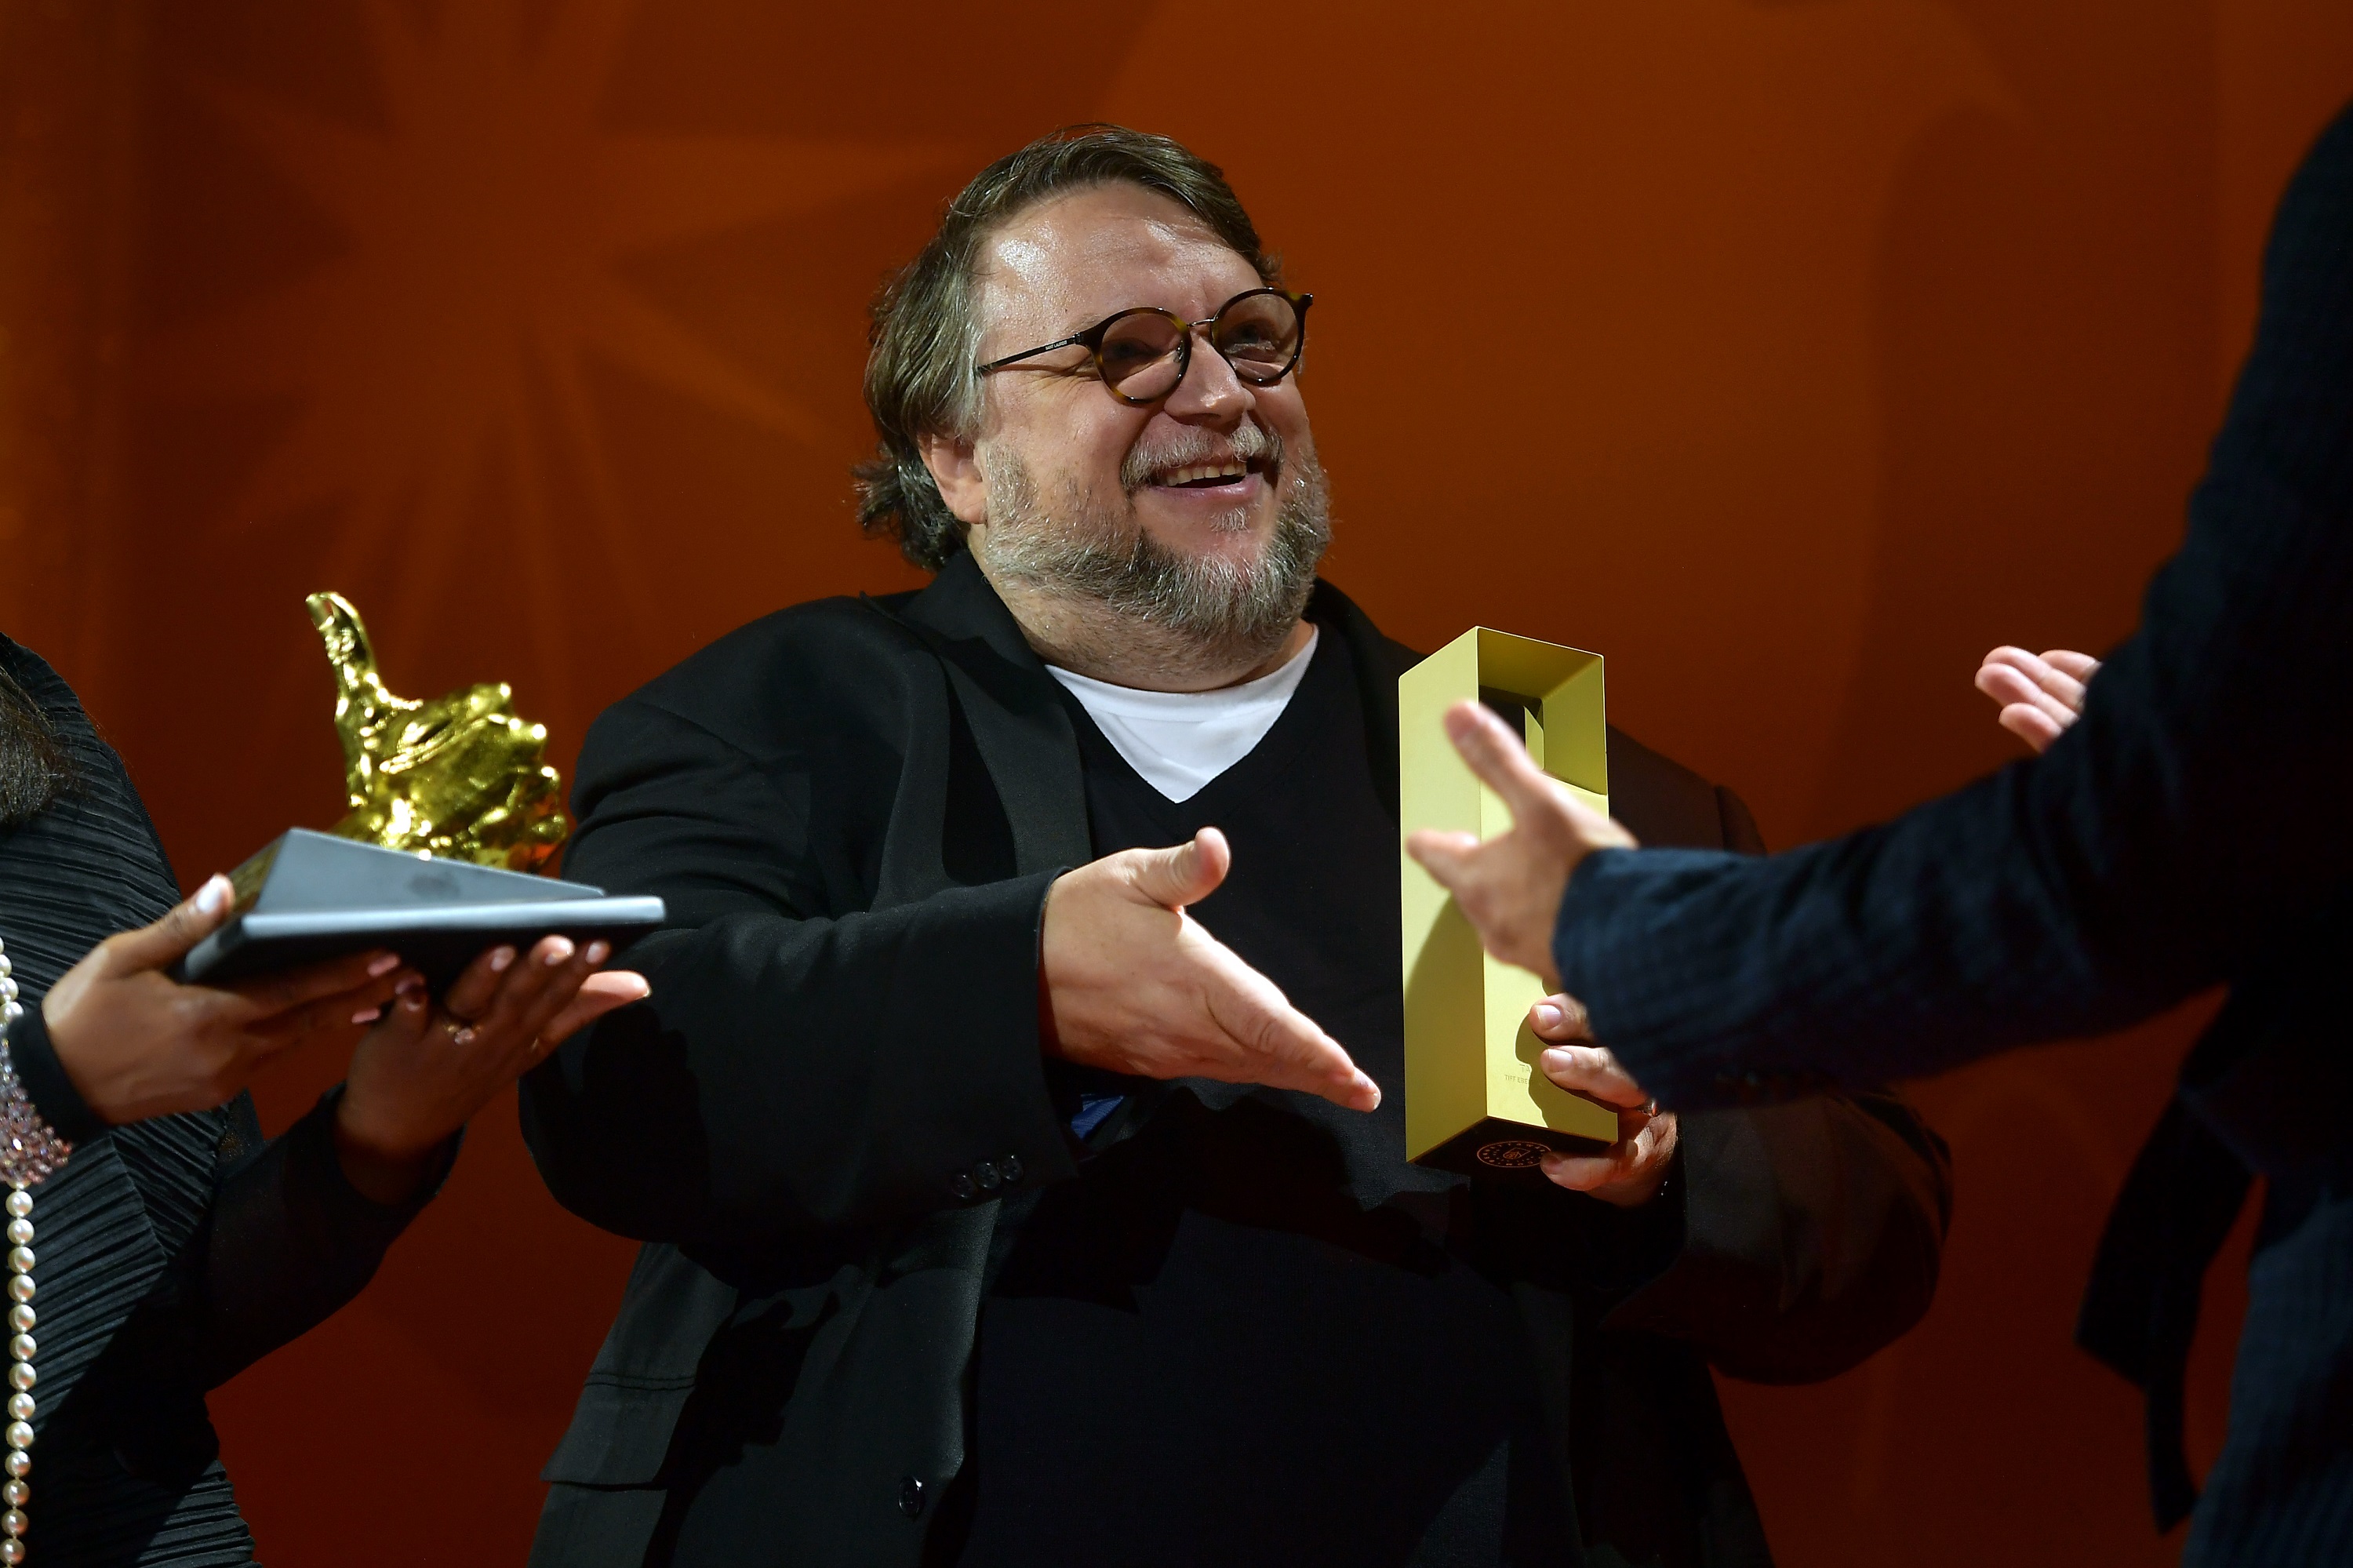 Nightmare Alley director Guillermo del Toro